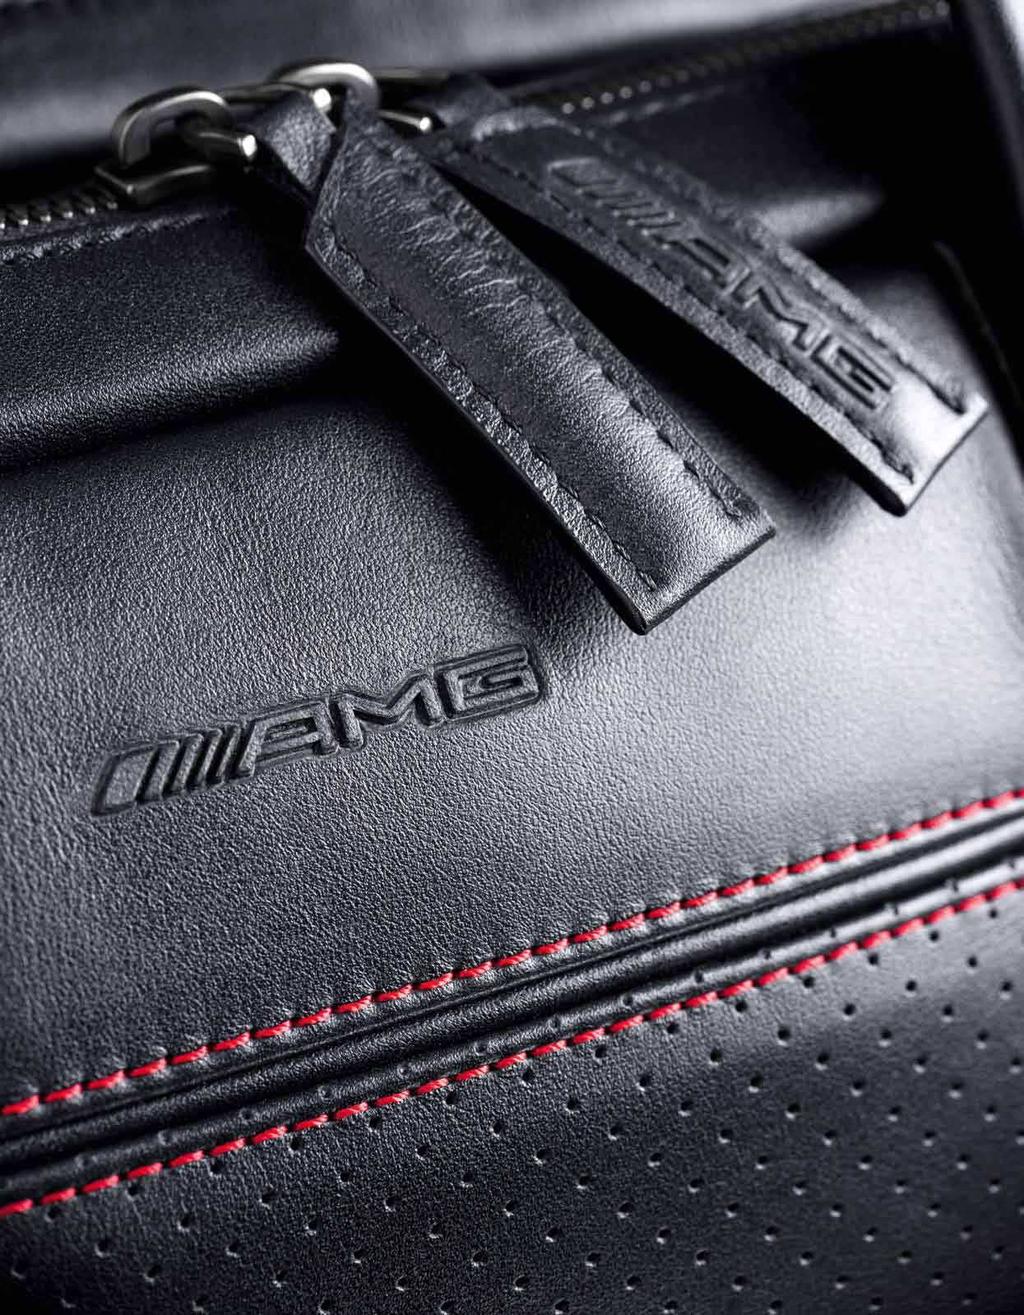 Dynamisches Design trit liebevolle Handarbeit. Die exklusiven AMG Lederaccessoires werden komplett in Handarbeit in einer Manufaktur in Deutschland hergestellt.